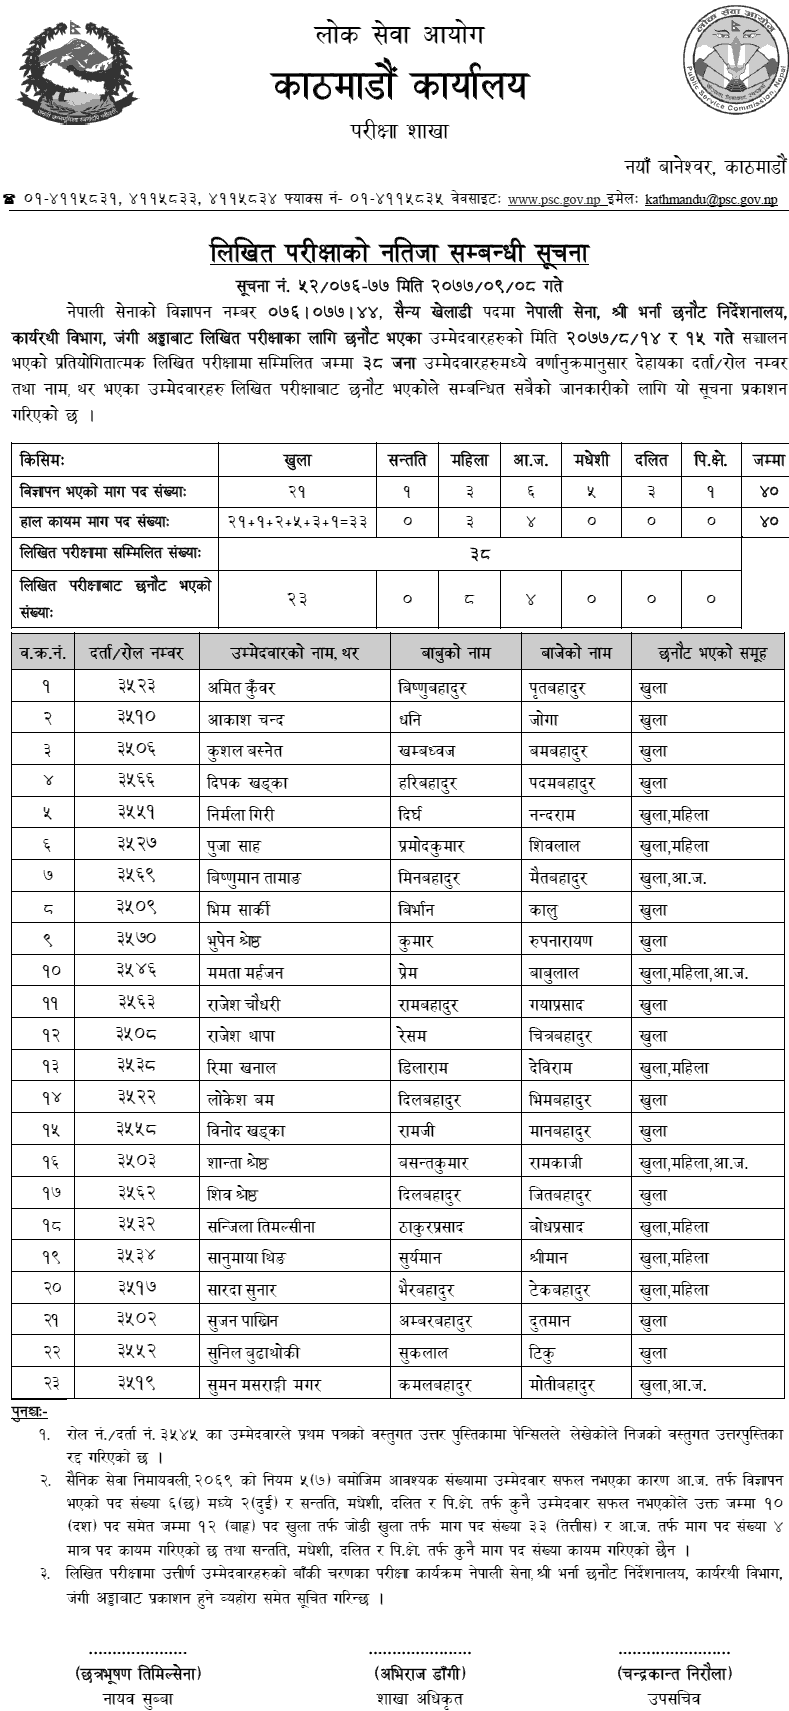 Nepal Army Sainya Kheladi Post Written Exam Result